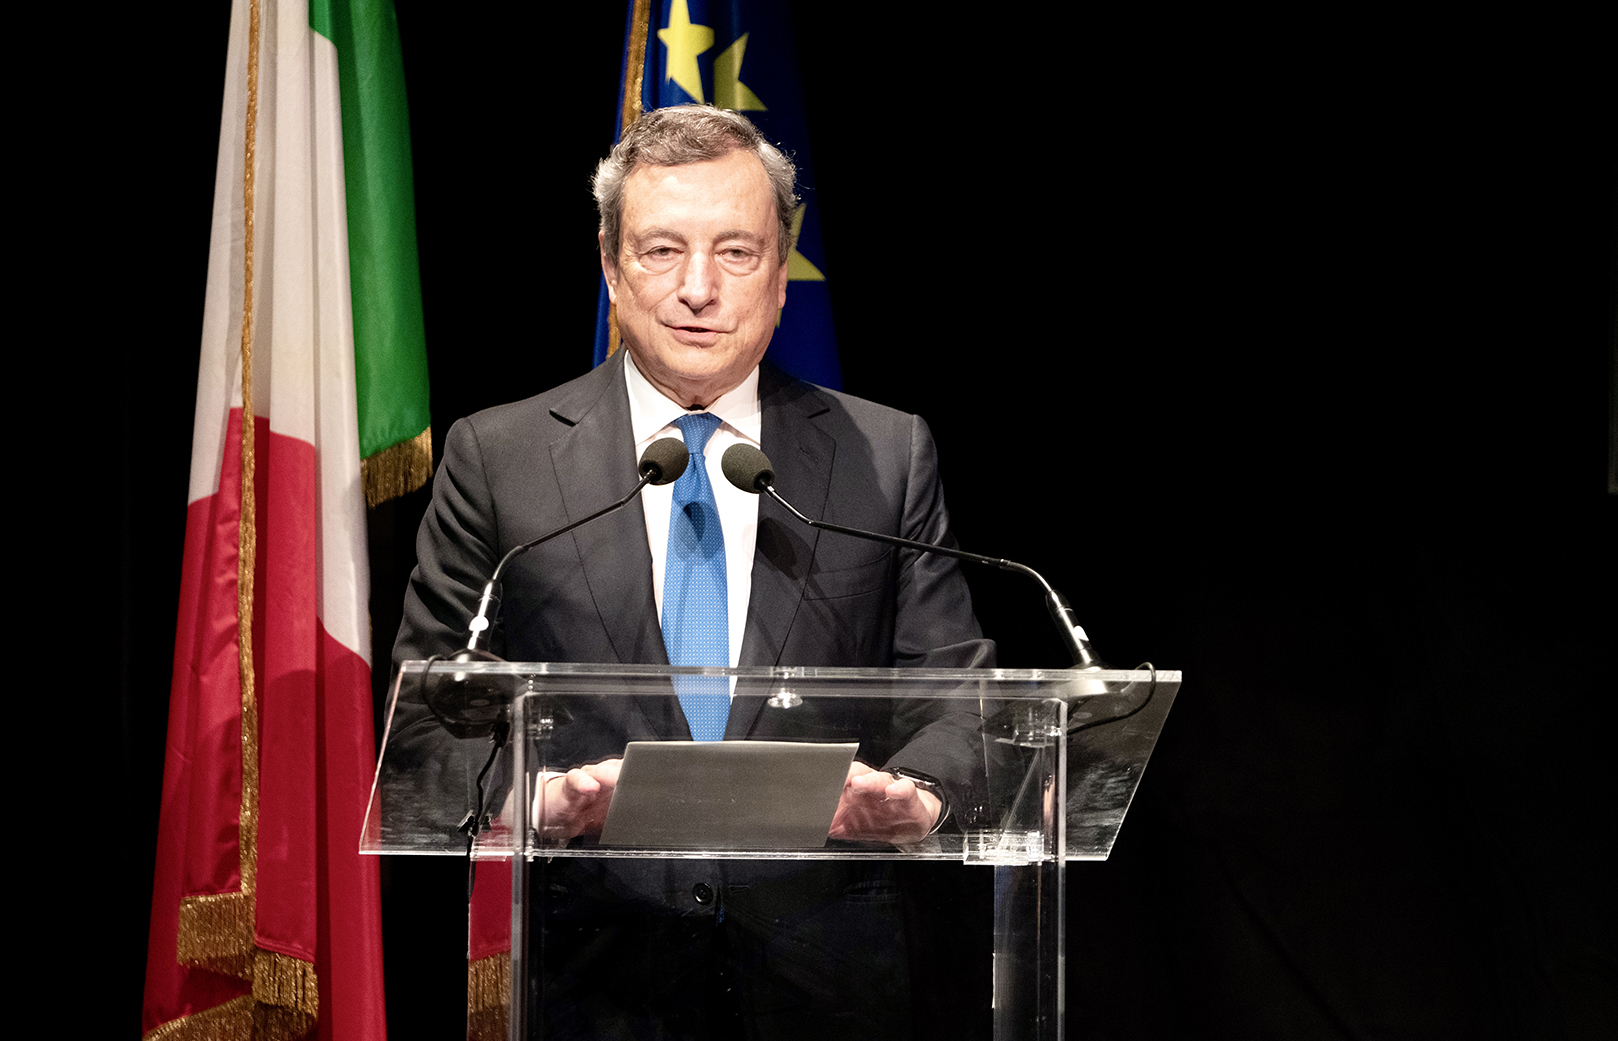 Il Presidente del Consiglio Draghi a Bologna alla Cerimonia conclusiva del G20 Interfaith Forum 2021